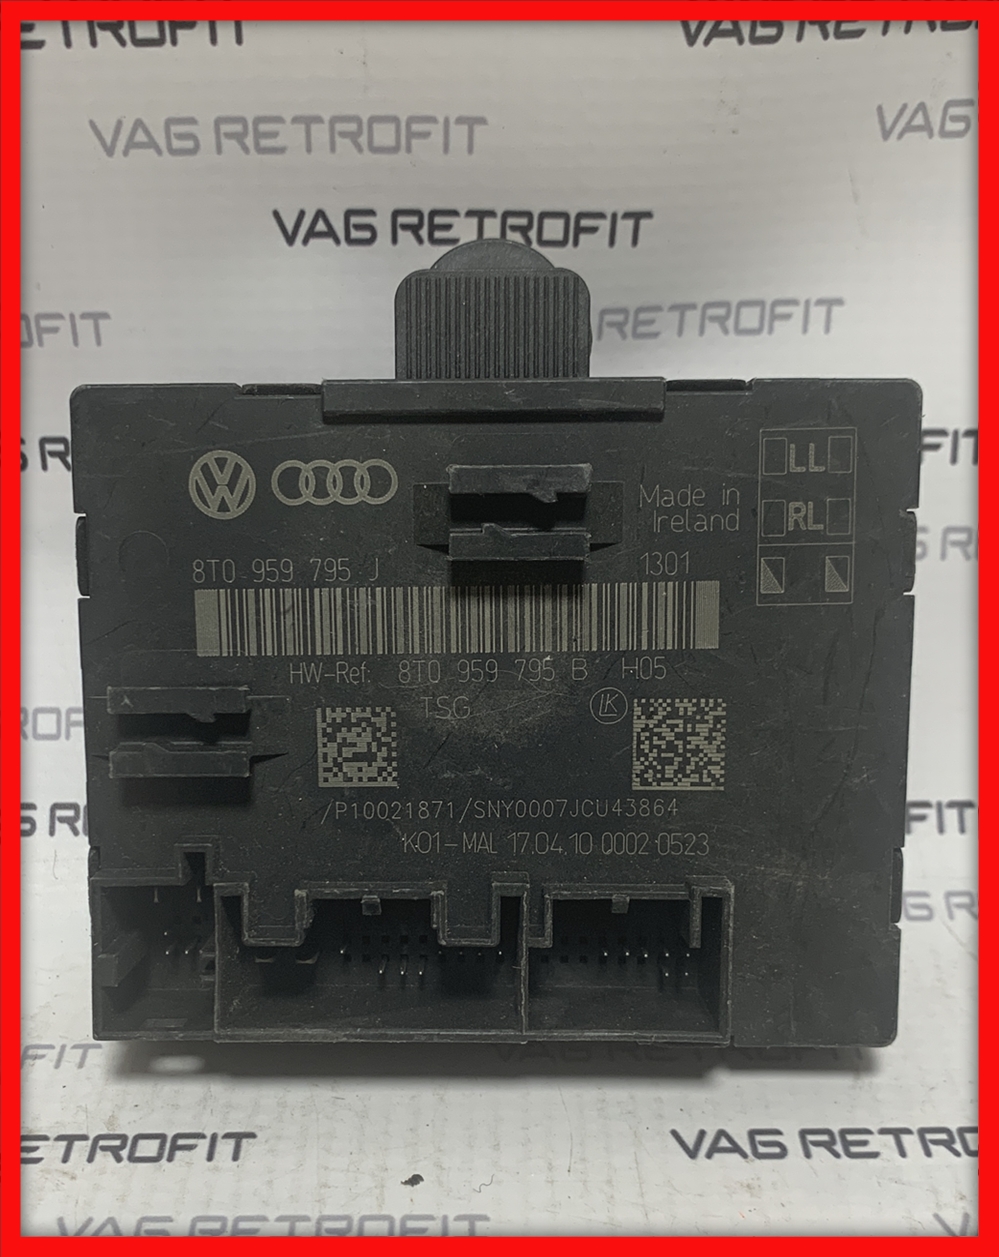 Poza 1 - Calculator Modul Usa Audi A4 B8 8T A5 8T 8T0959795J 8T0 959 795 J